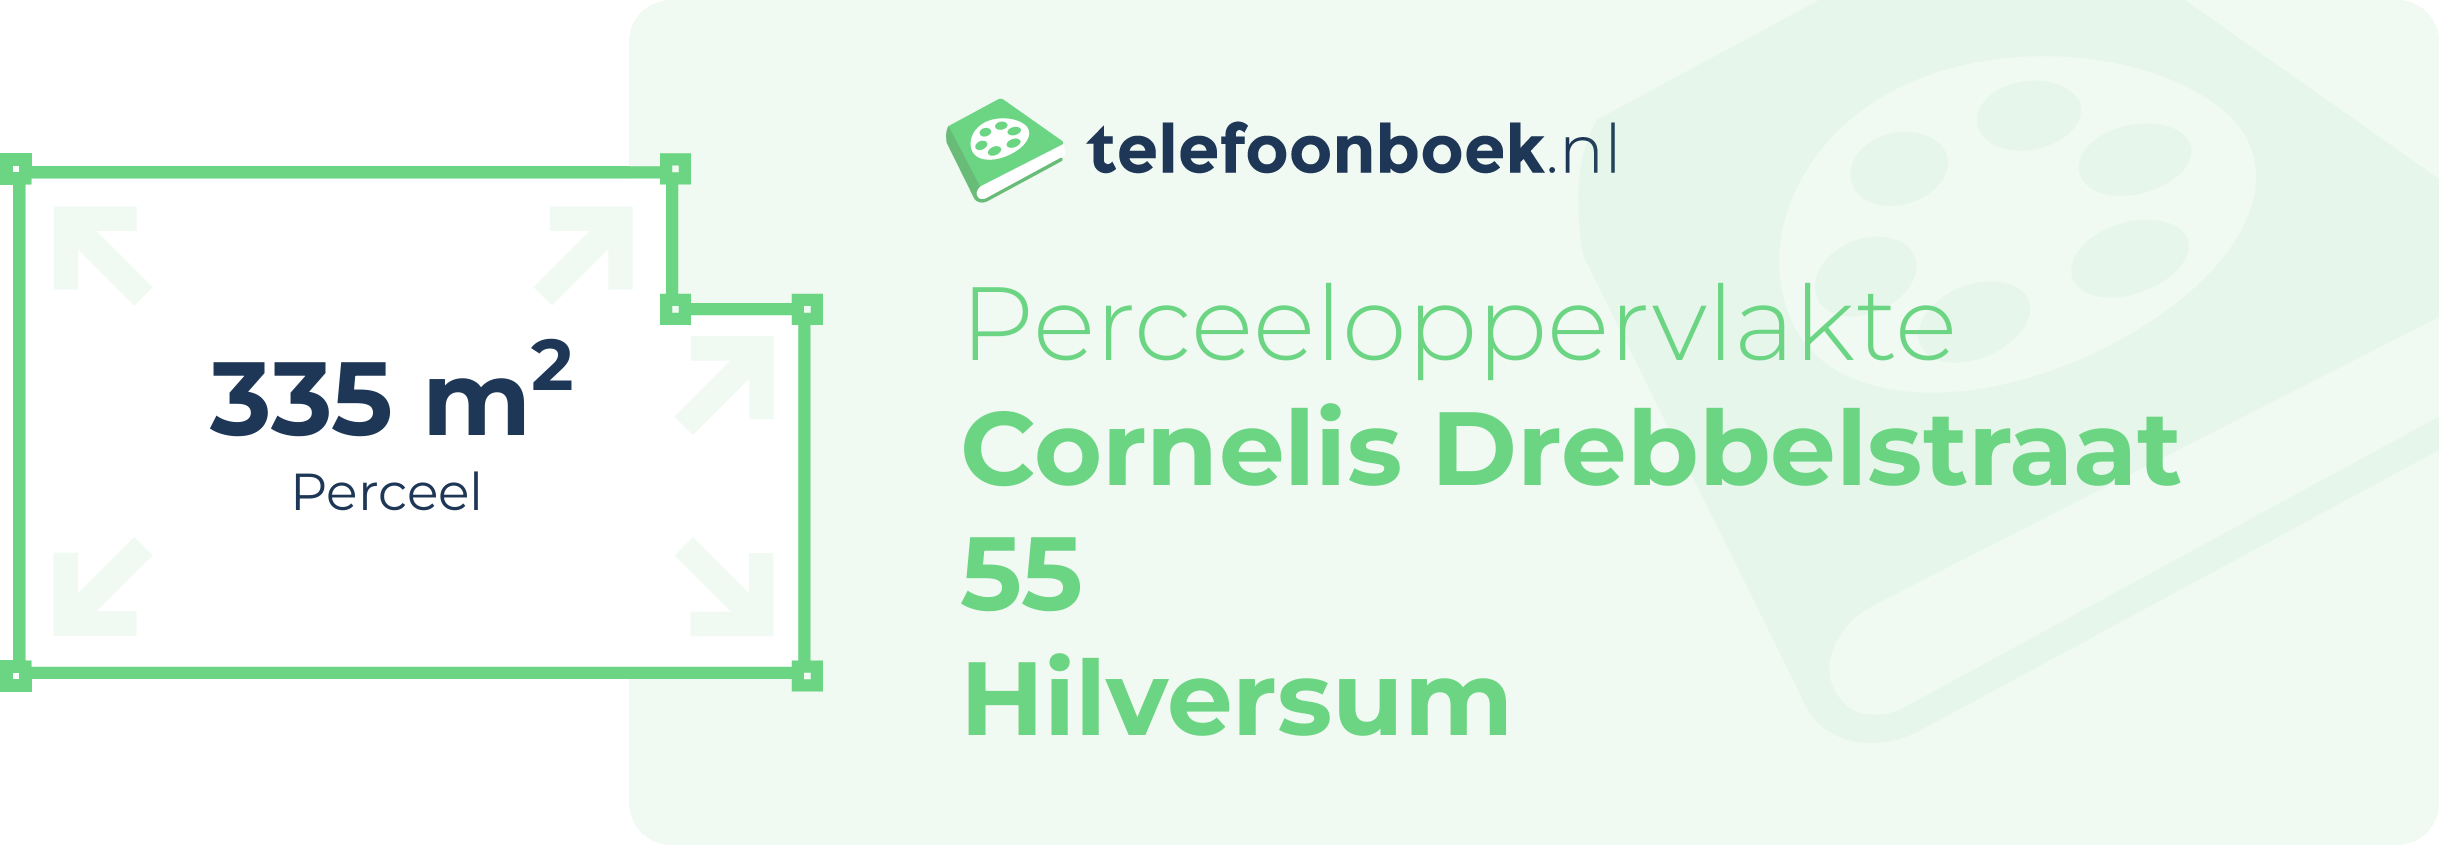 Perceeloppervlakte Cornelis Drebbelstraat 55 Hilversum